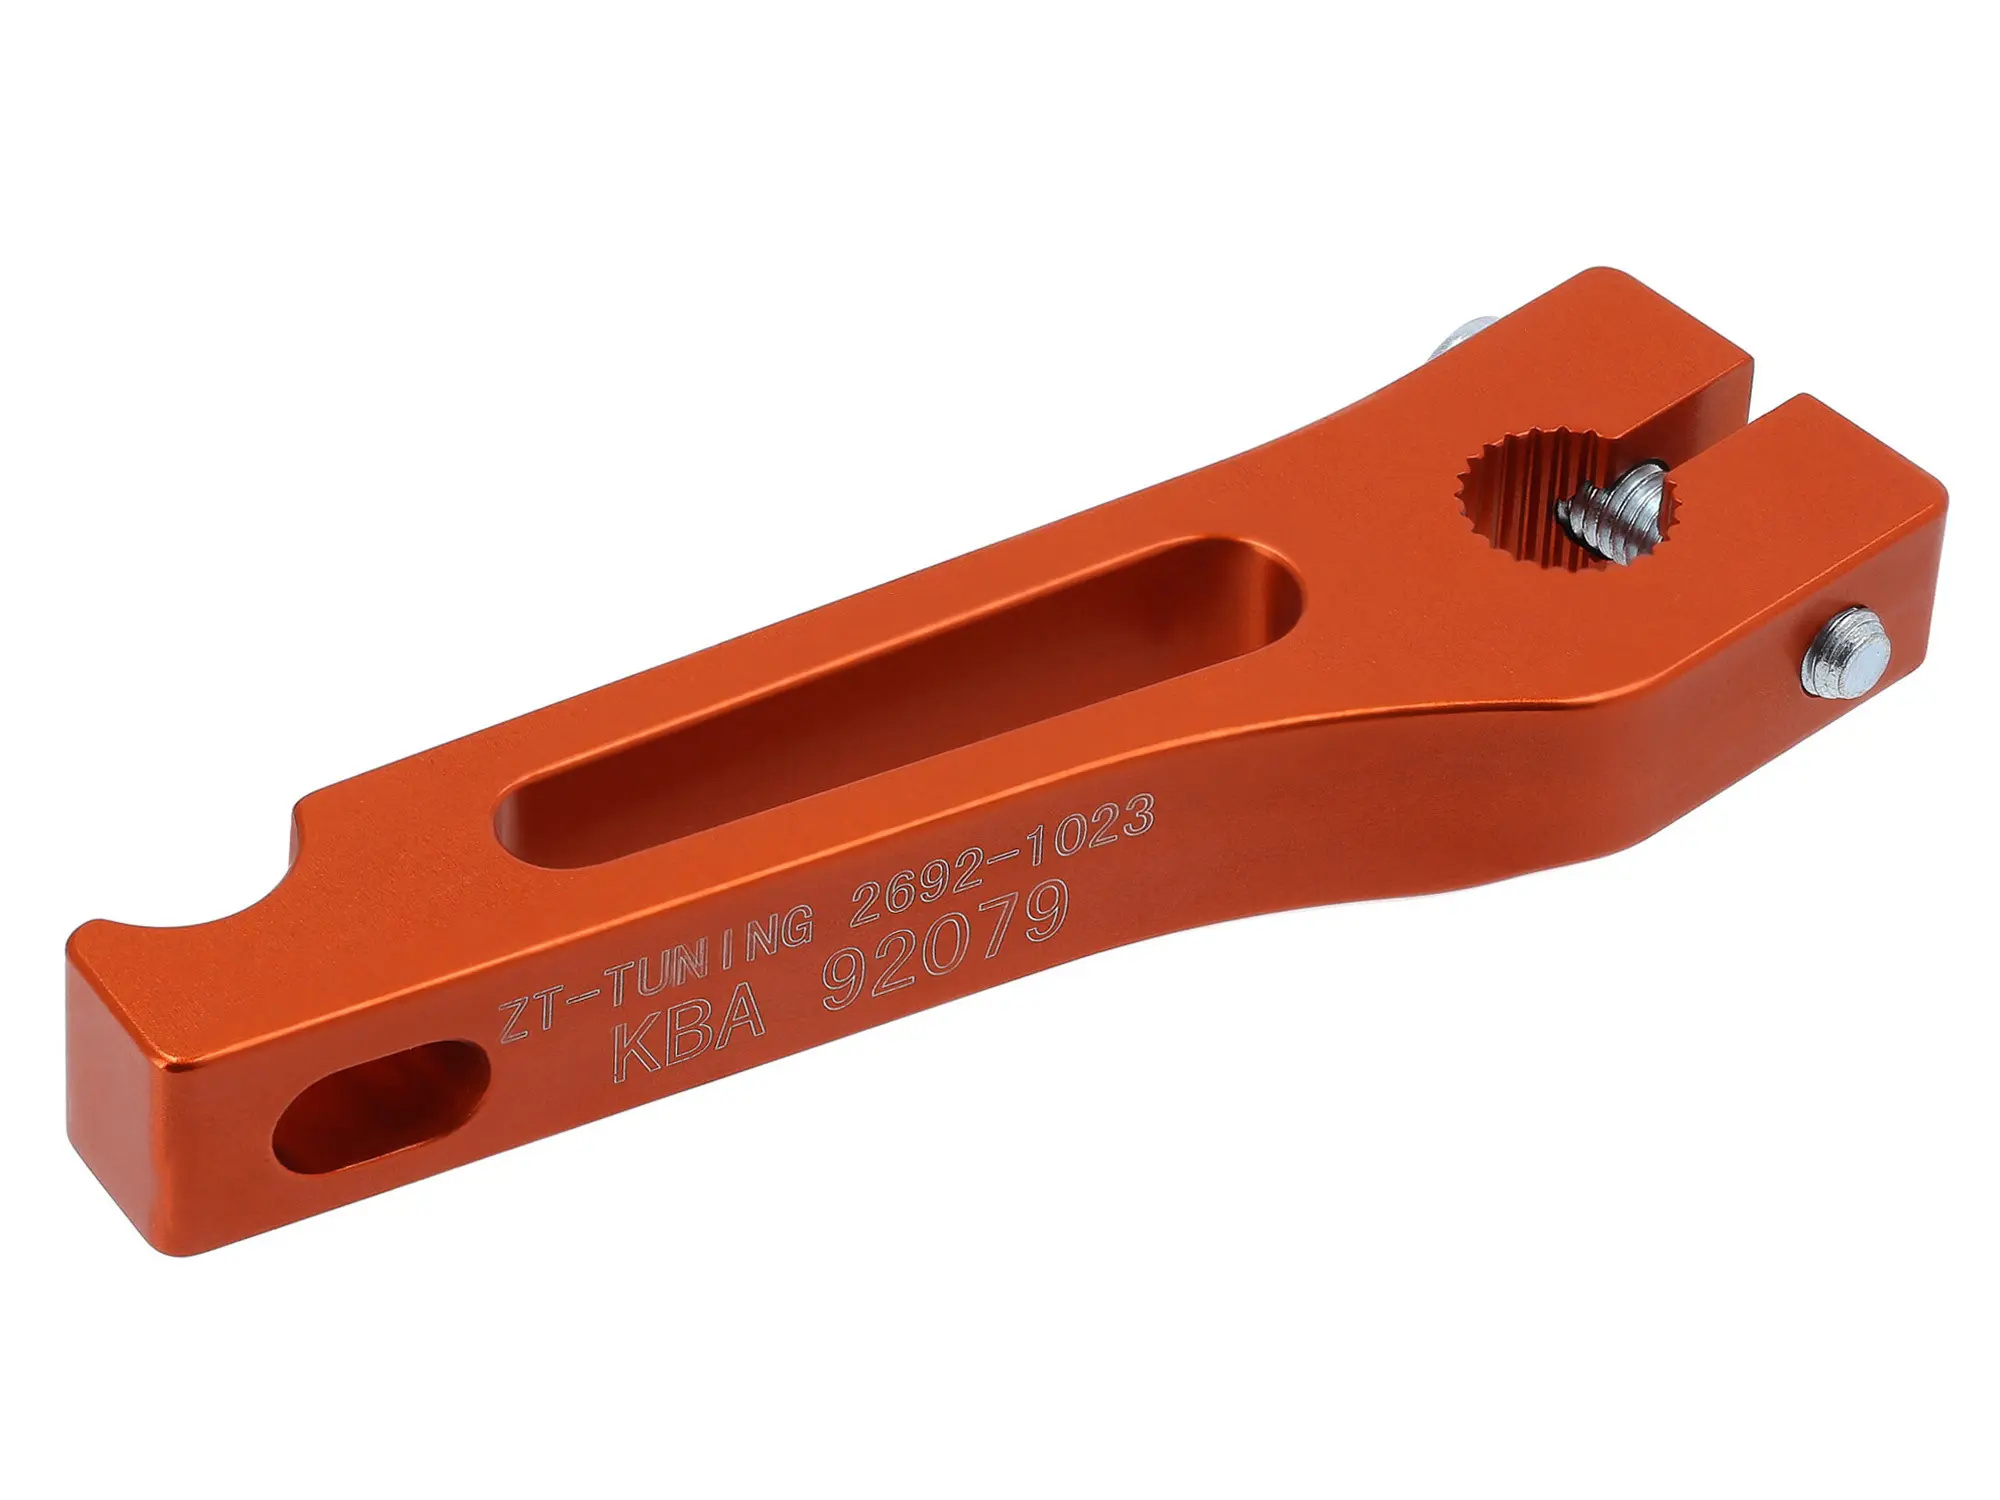 ZT-Tuning CNC Bremshebel hinten mit ABE, Orange - für S50, S51, S70, KR51/1, KR51/2, SR50, SR80, SR4-1, SR4-2, SR4-3, SR4-4, Art.-Nr.: 10077916 - Bild 1